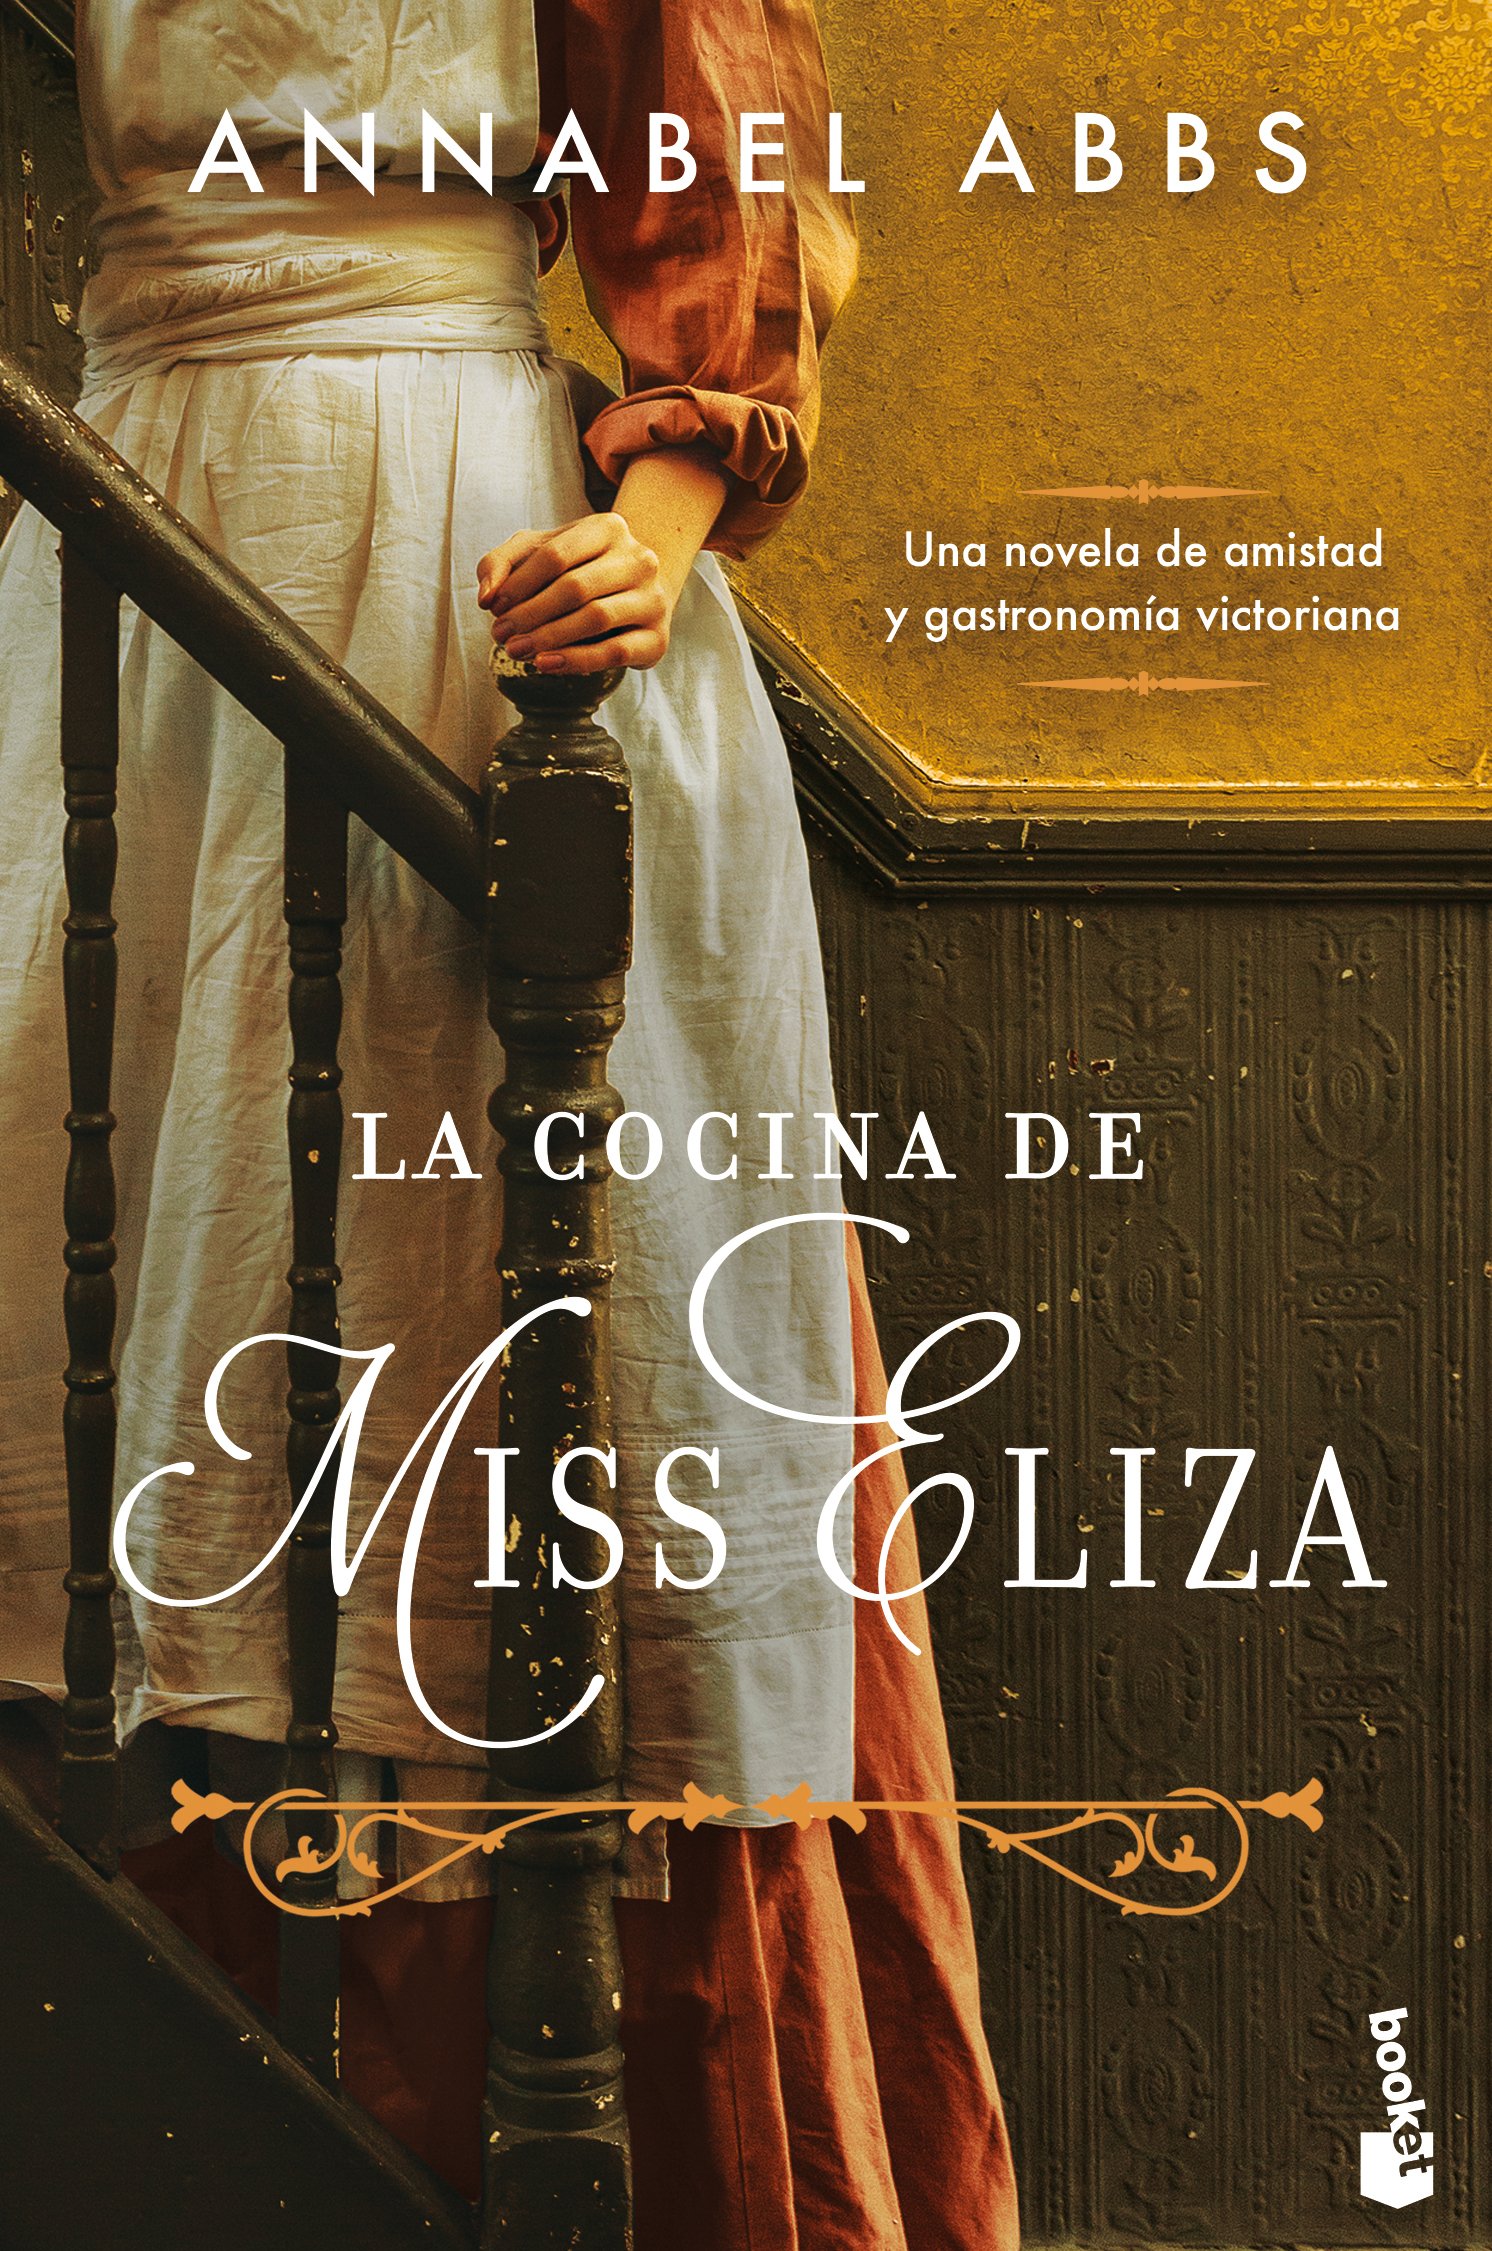 Spain - special limited edition cover - la cocina de miss eliza copy.jpg